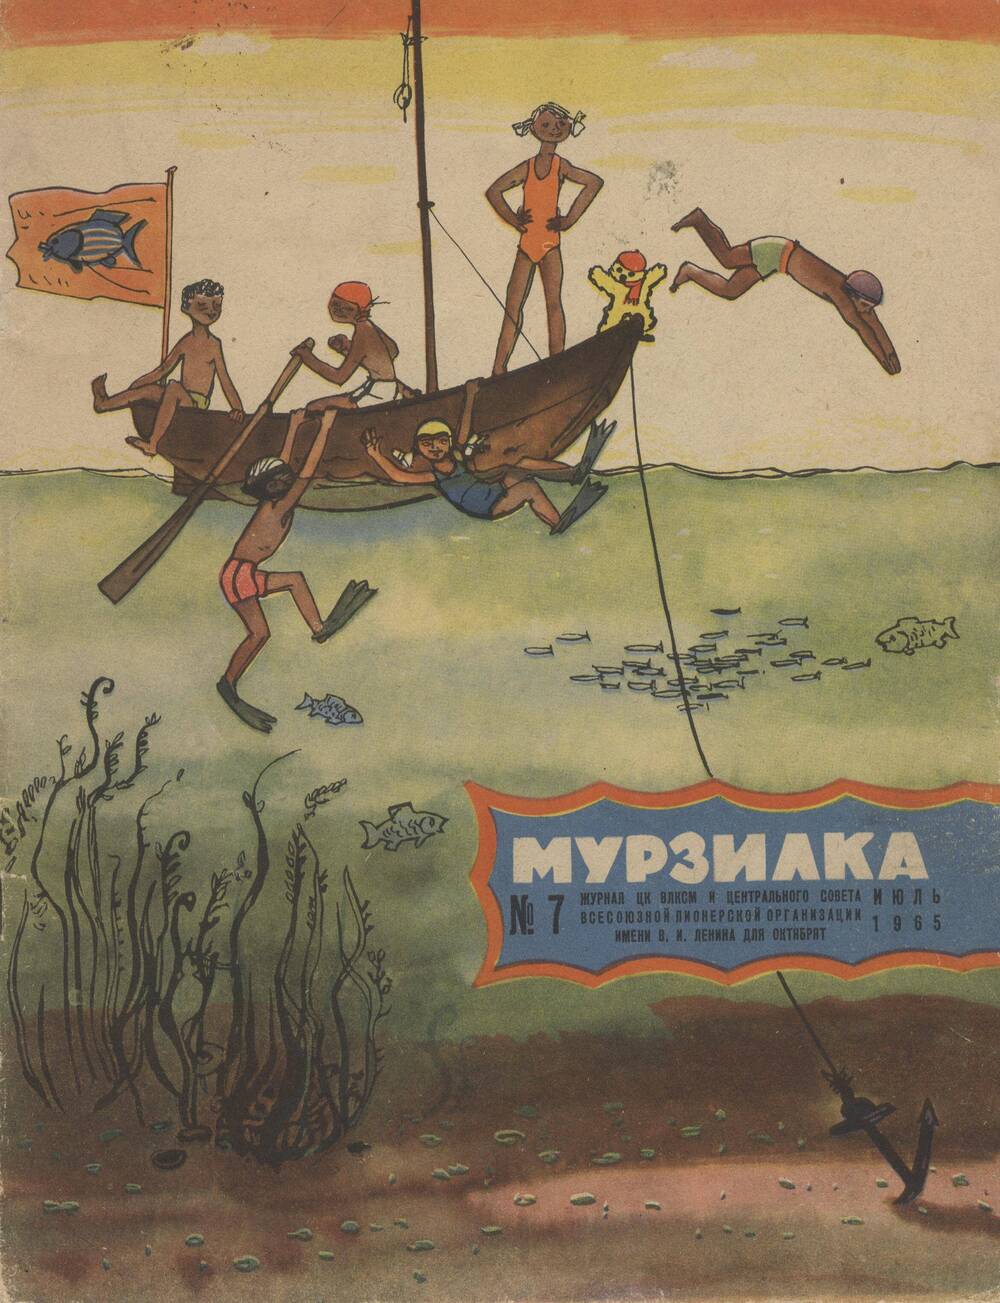 Журнал. Мурзилка. № 7, Июль 1965 г.